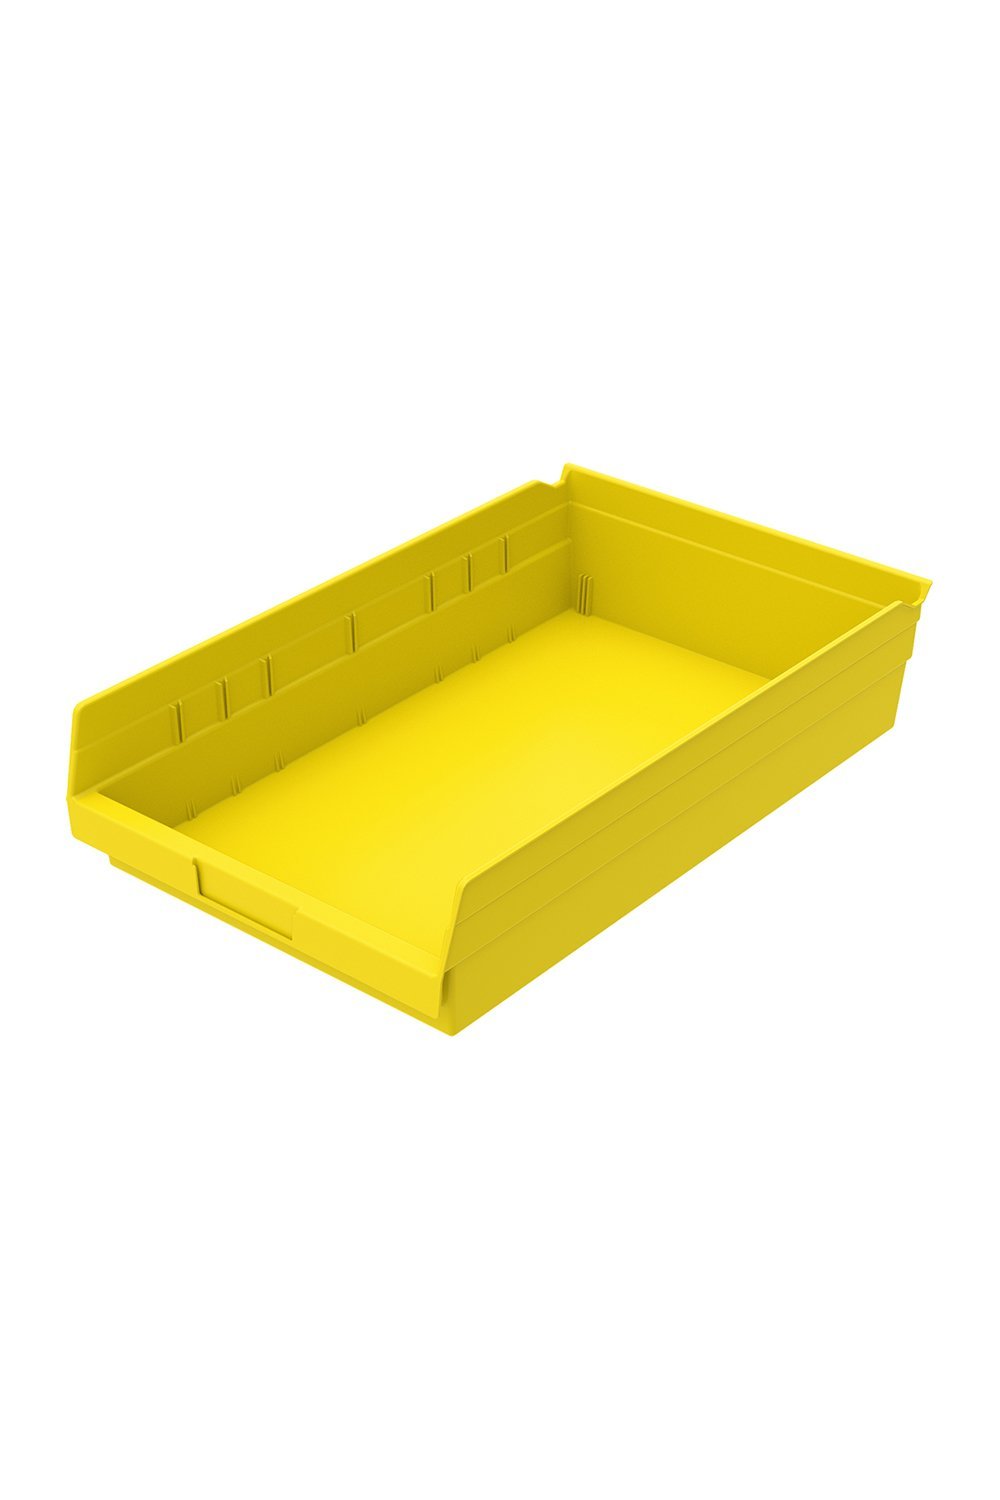 Shelf Bin for 18"D Shelves Bins & Containers Acart 17-7/8'' x 11-1/8'' x 4'' Yellow 